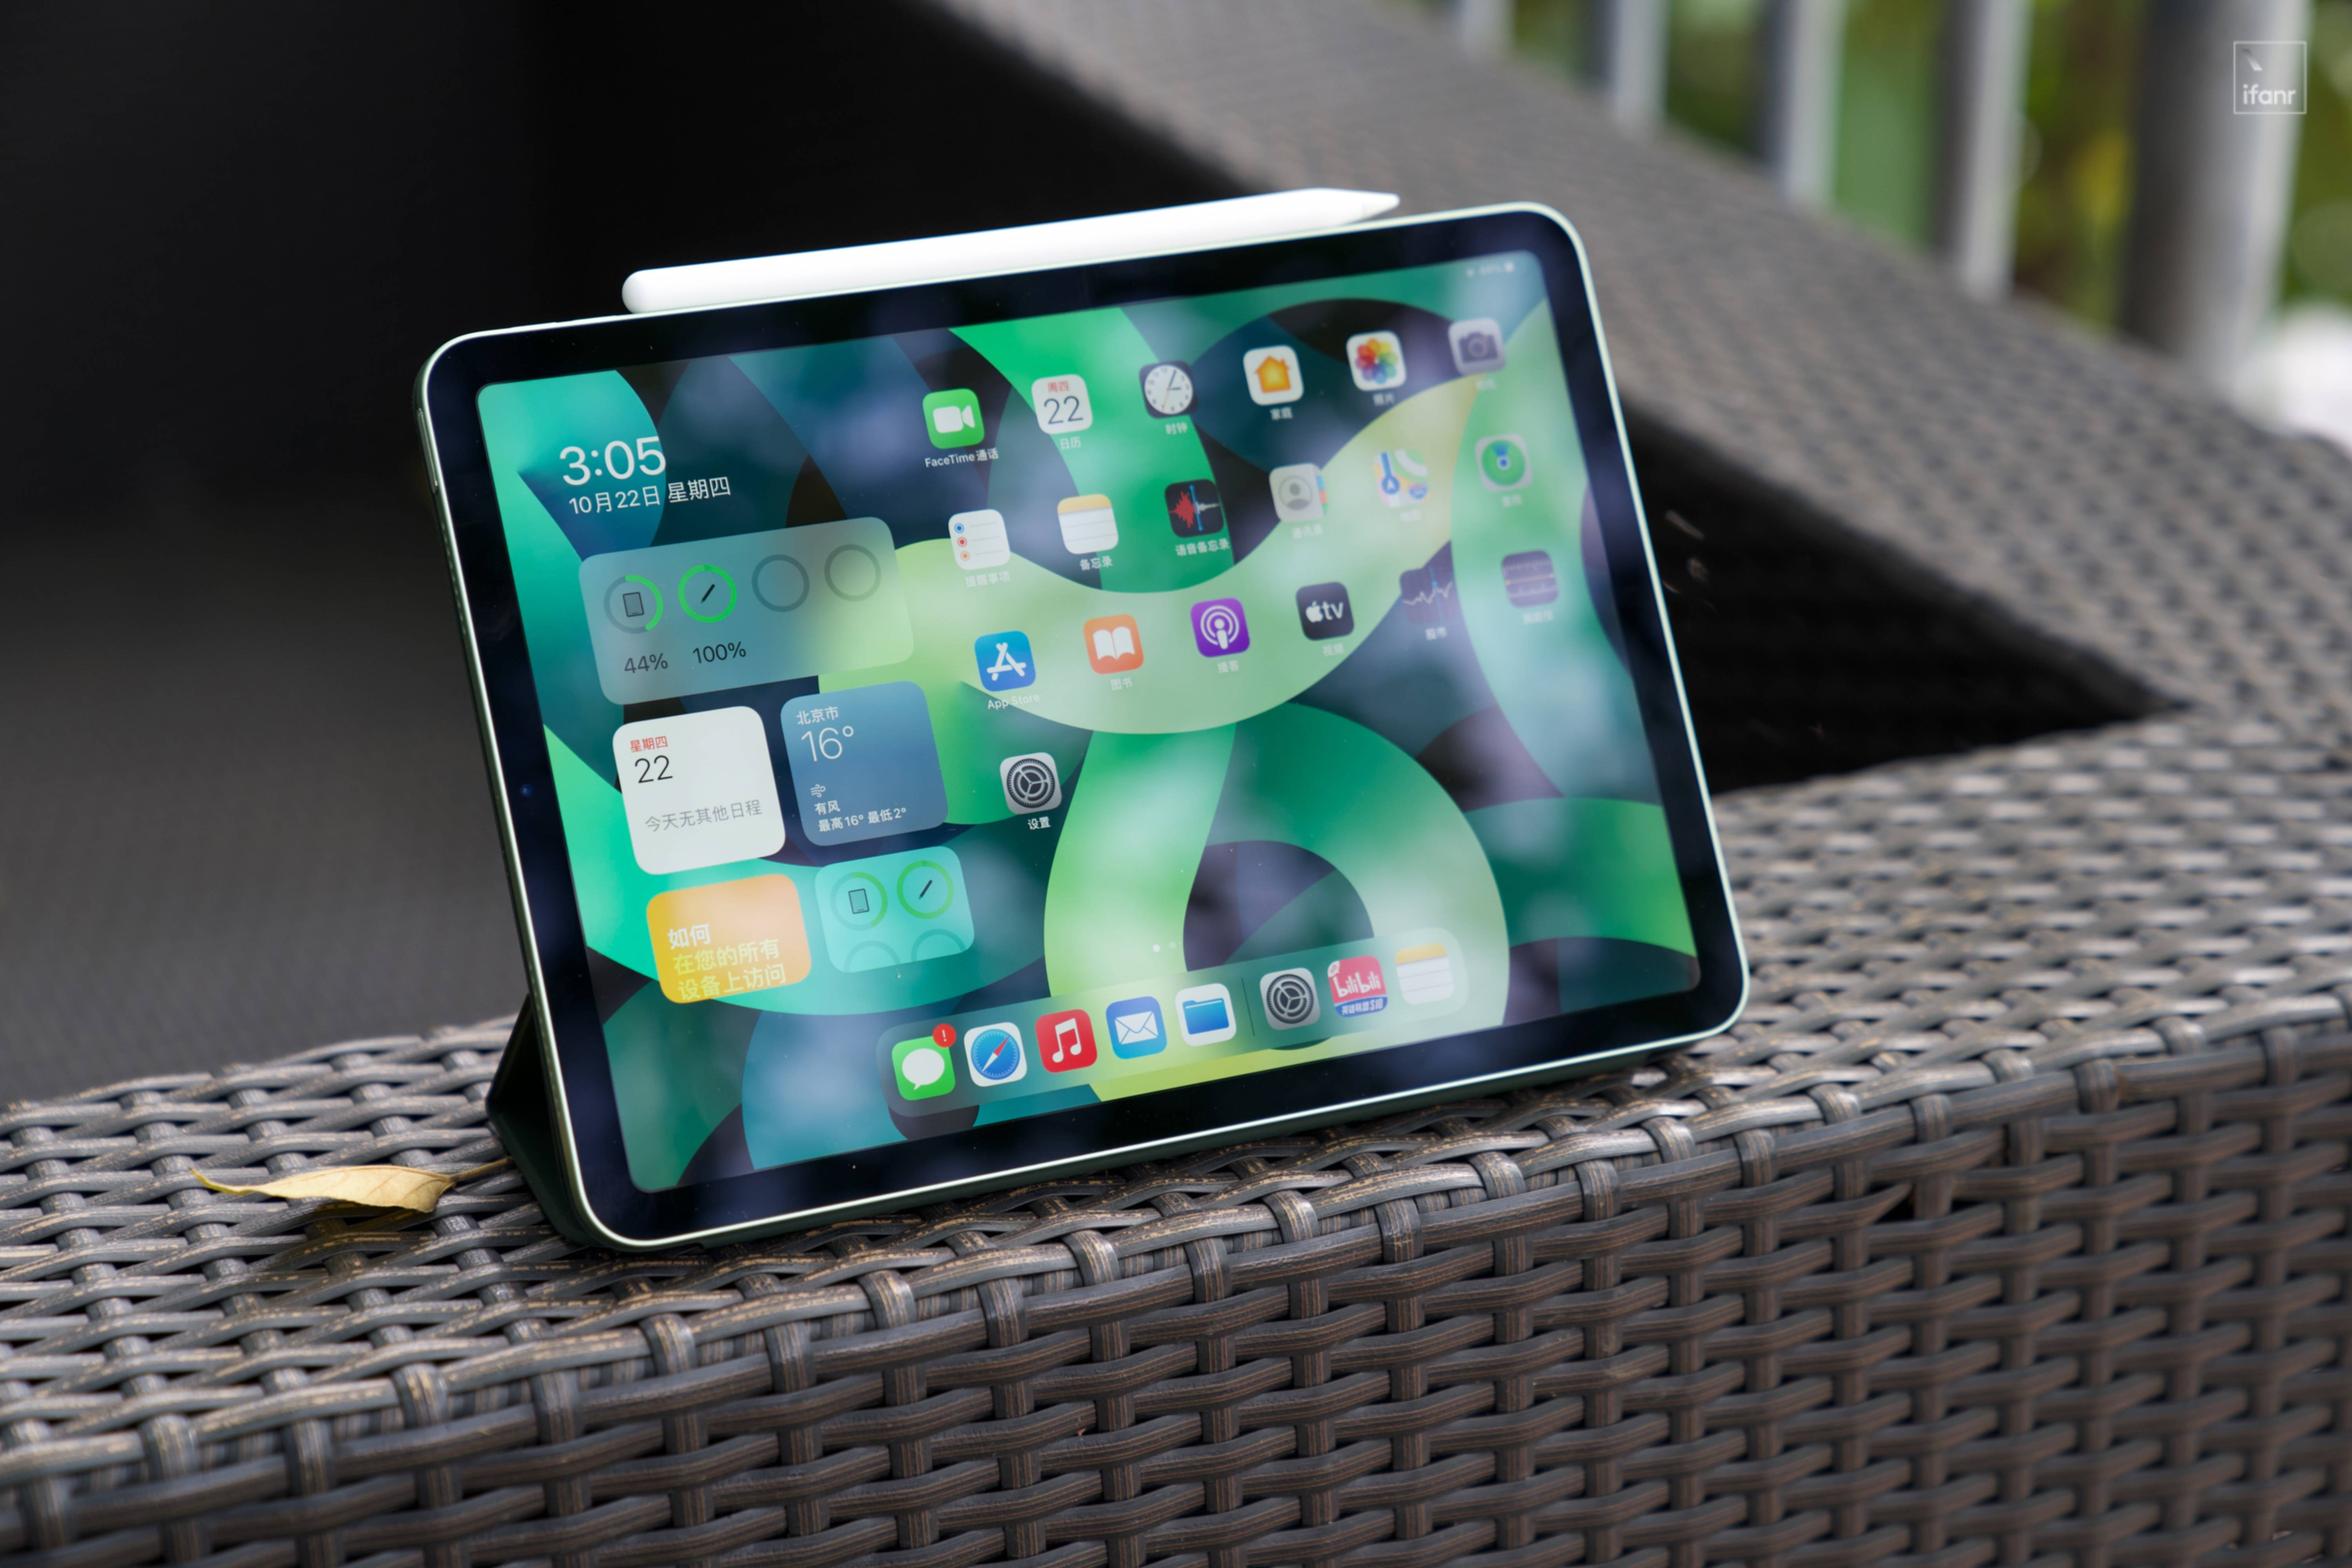 DSC07495 - Valutazione iPad Air di quarta generazione: le prestazioni sono alla pari con Pro e la durata della batteria è maggiore di Pro. Perché alcune persone dicono che non è buono?